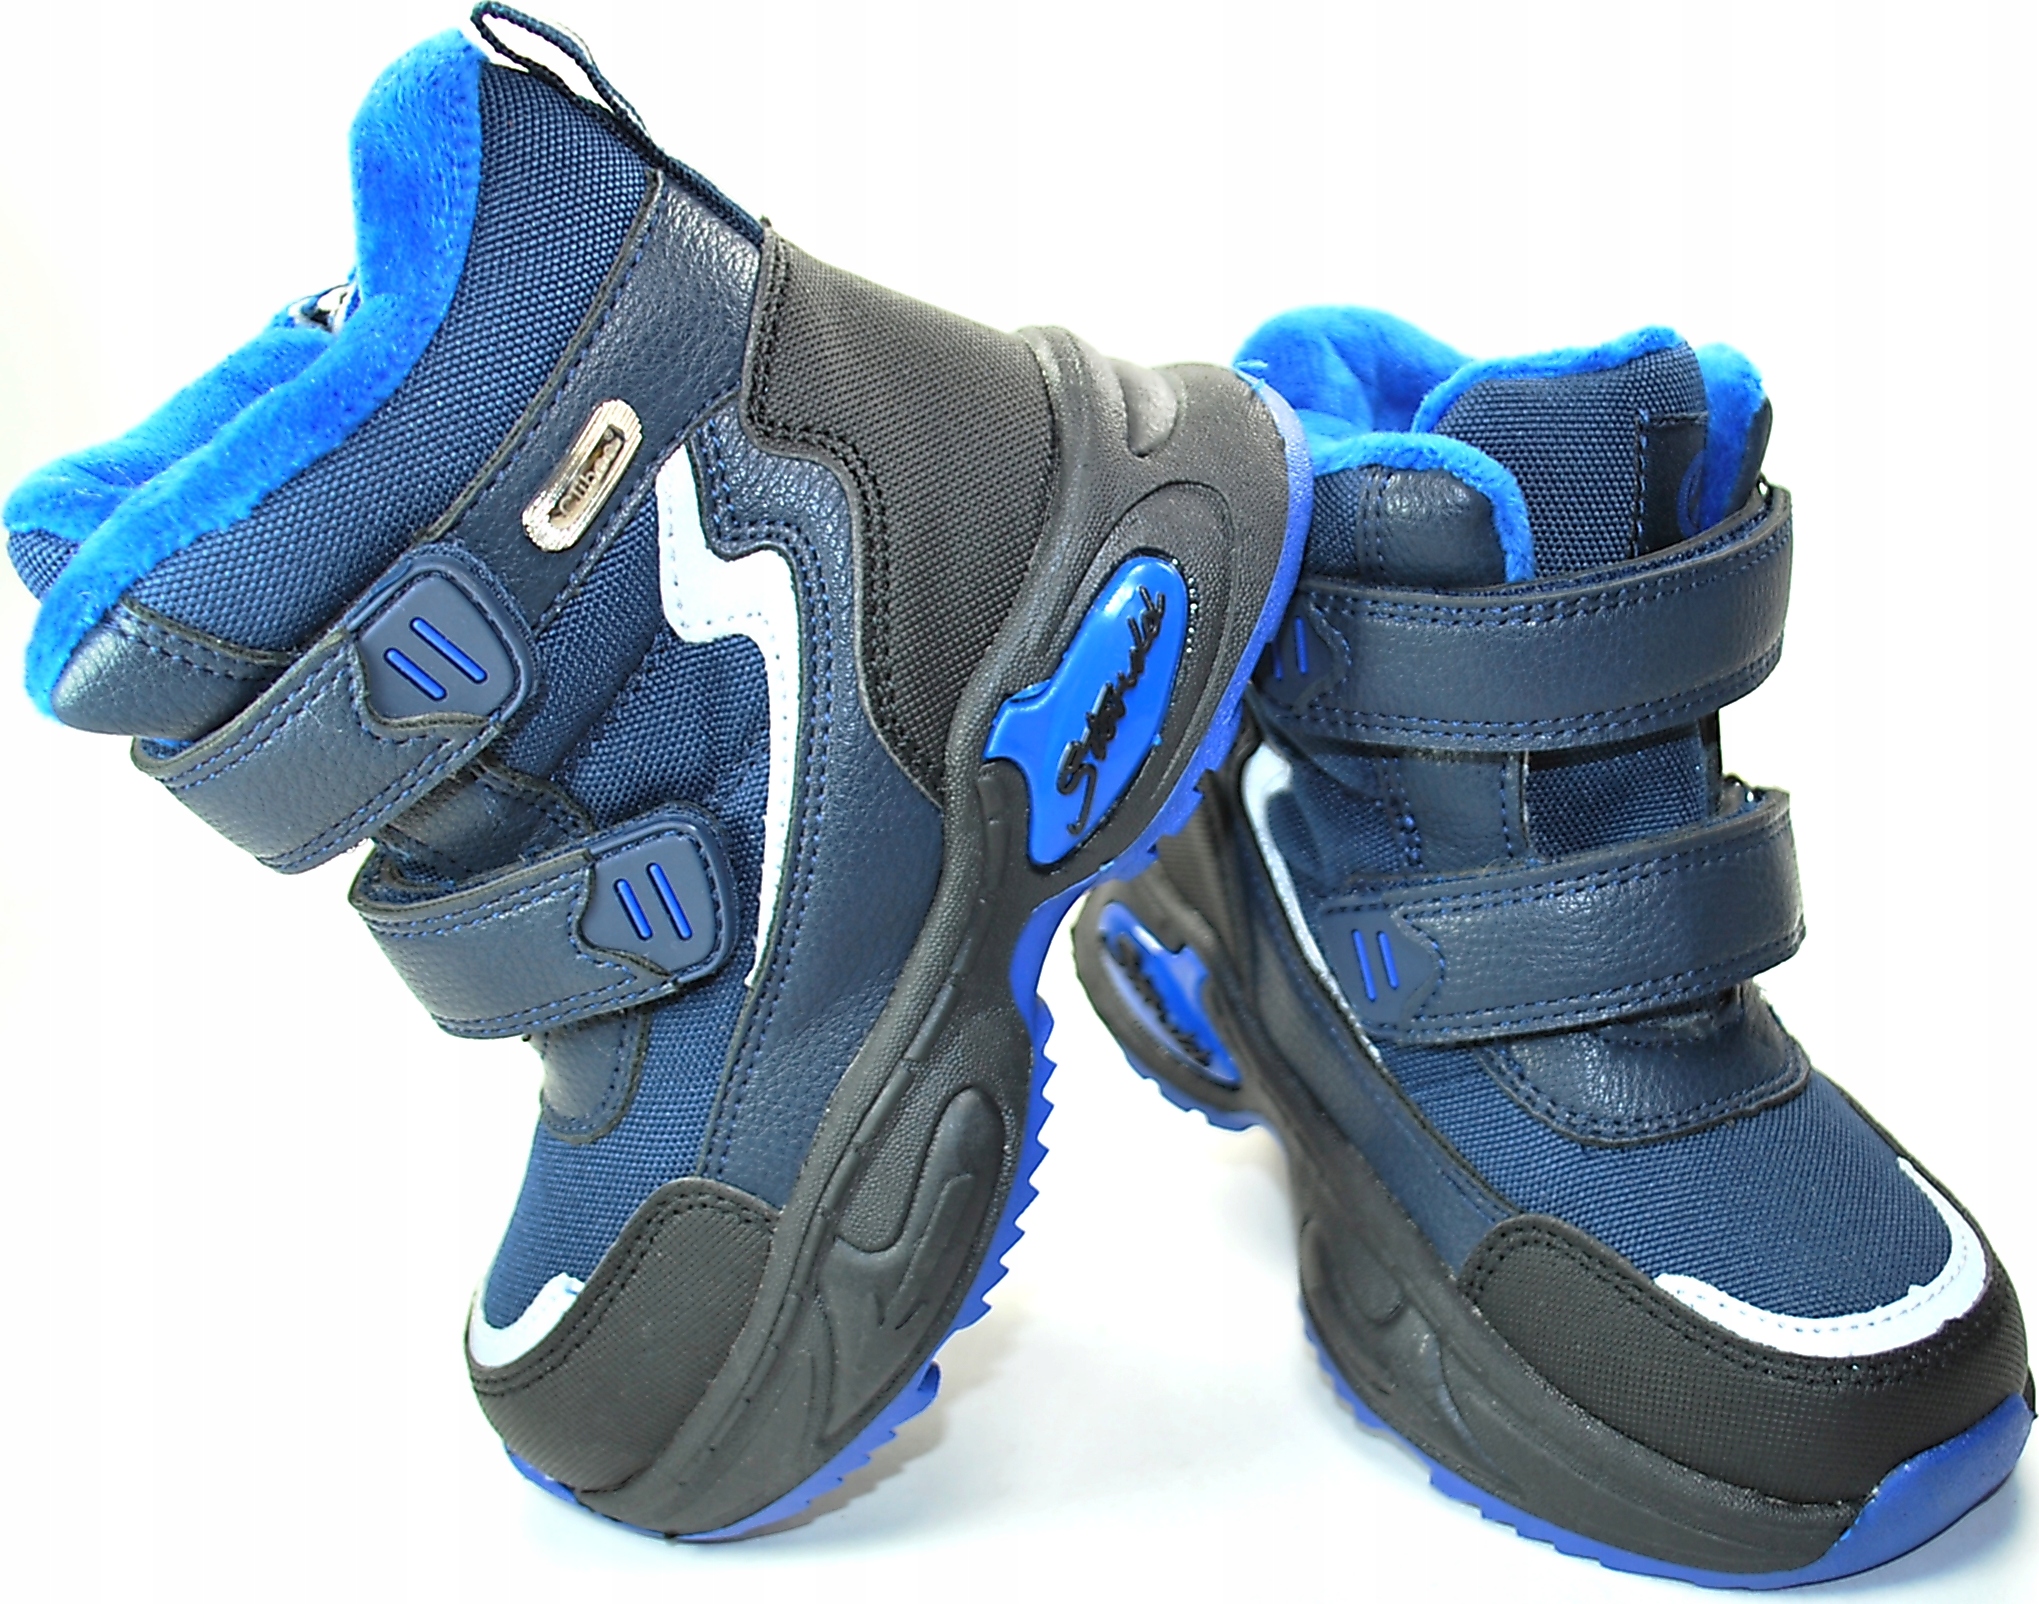 Темно-синие ботинки для мальчиков натуральный мех R 30 пол мальчики